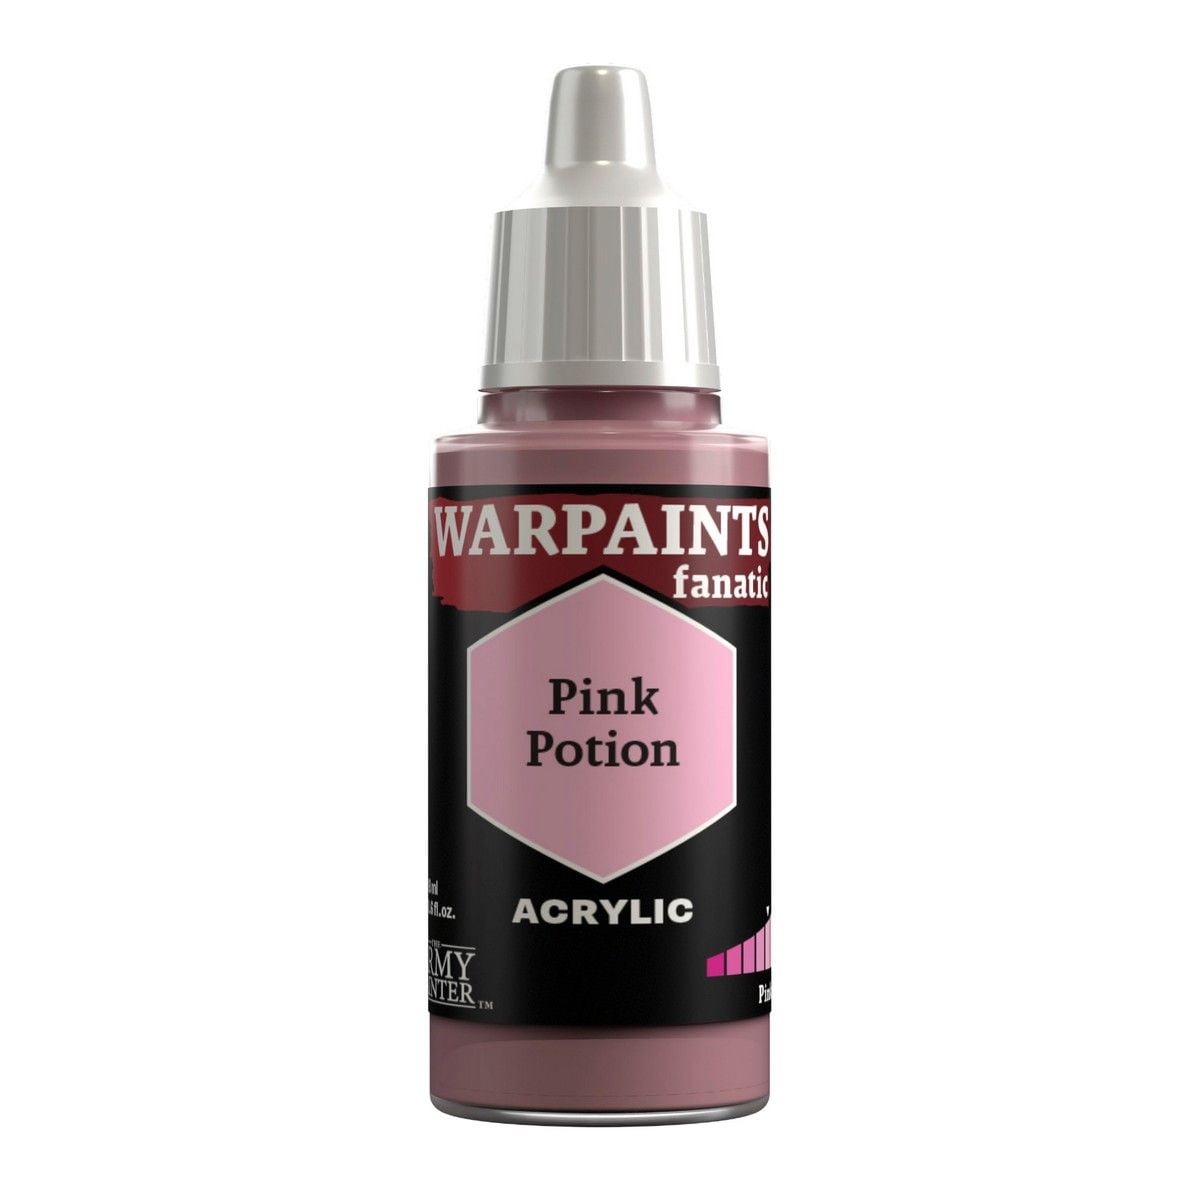 Warpaints Fanatic: Pink Potion - 18ml